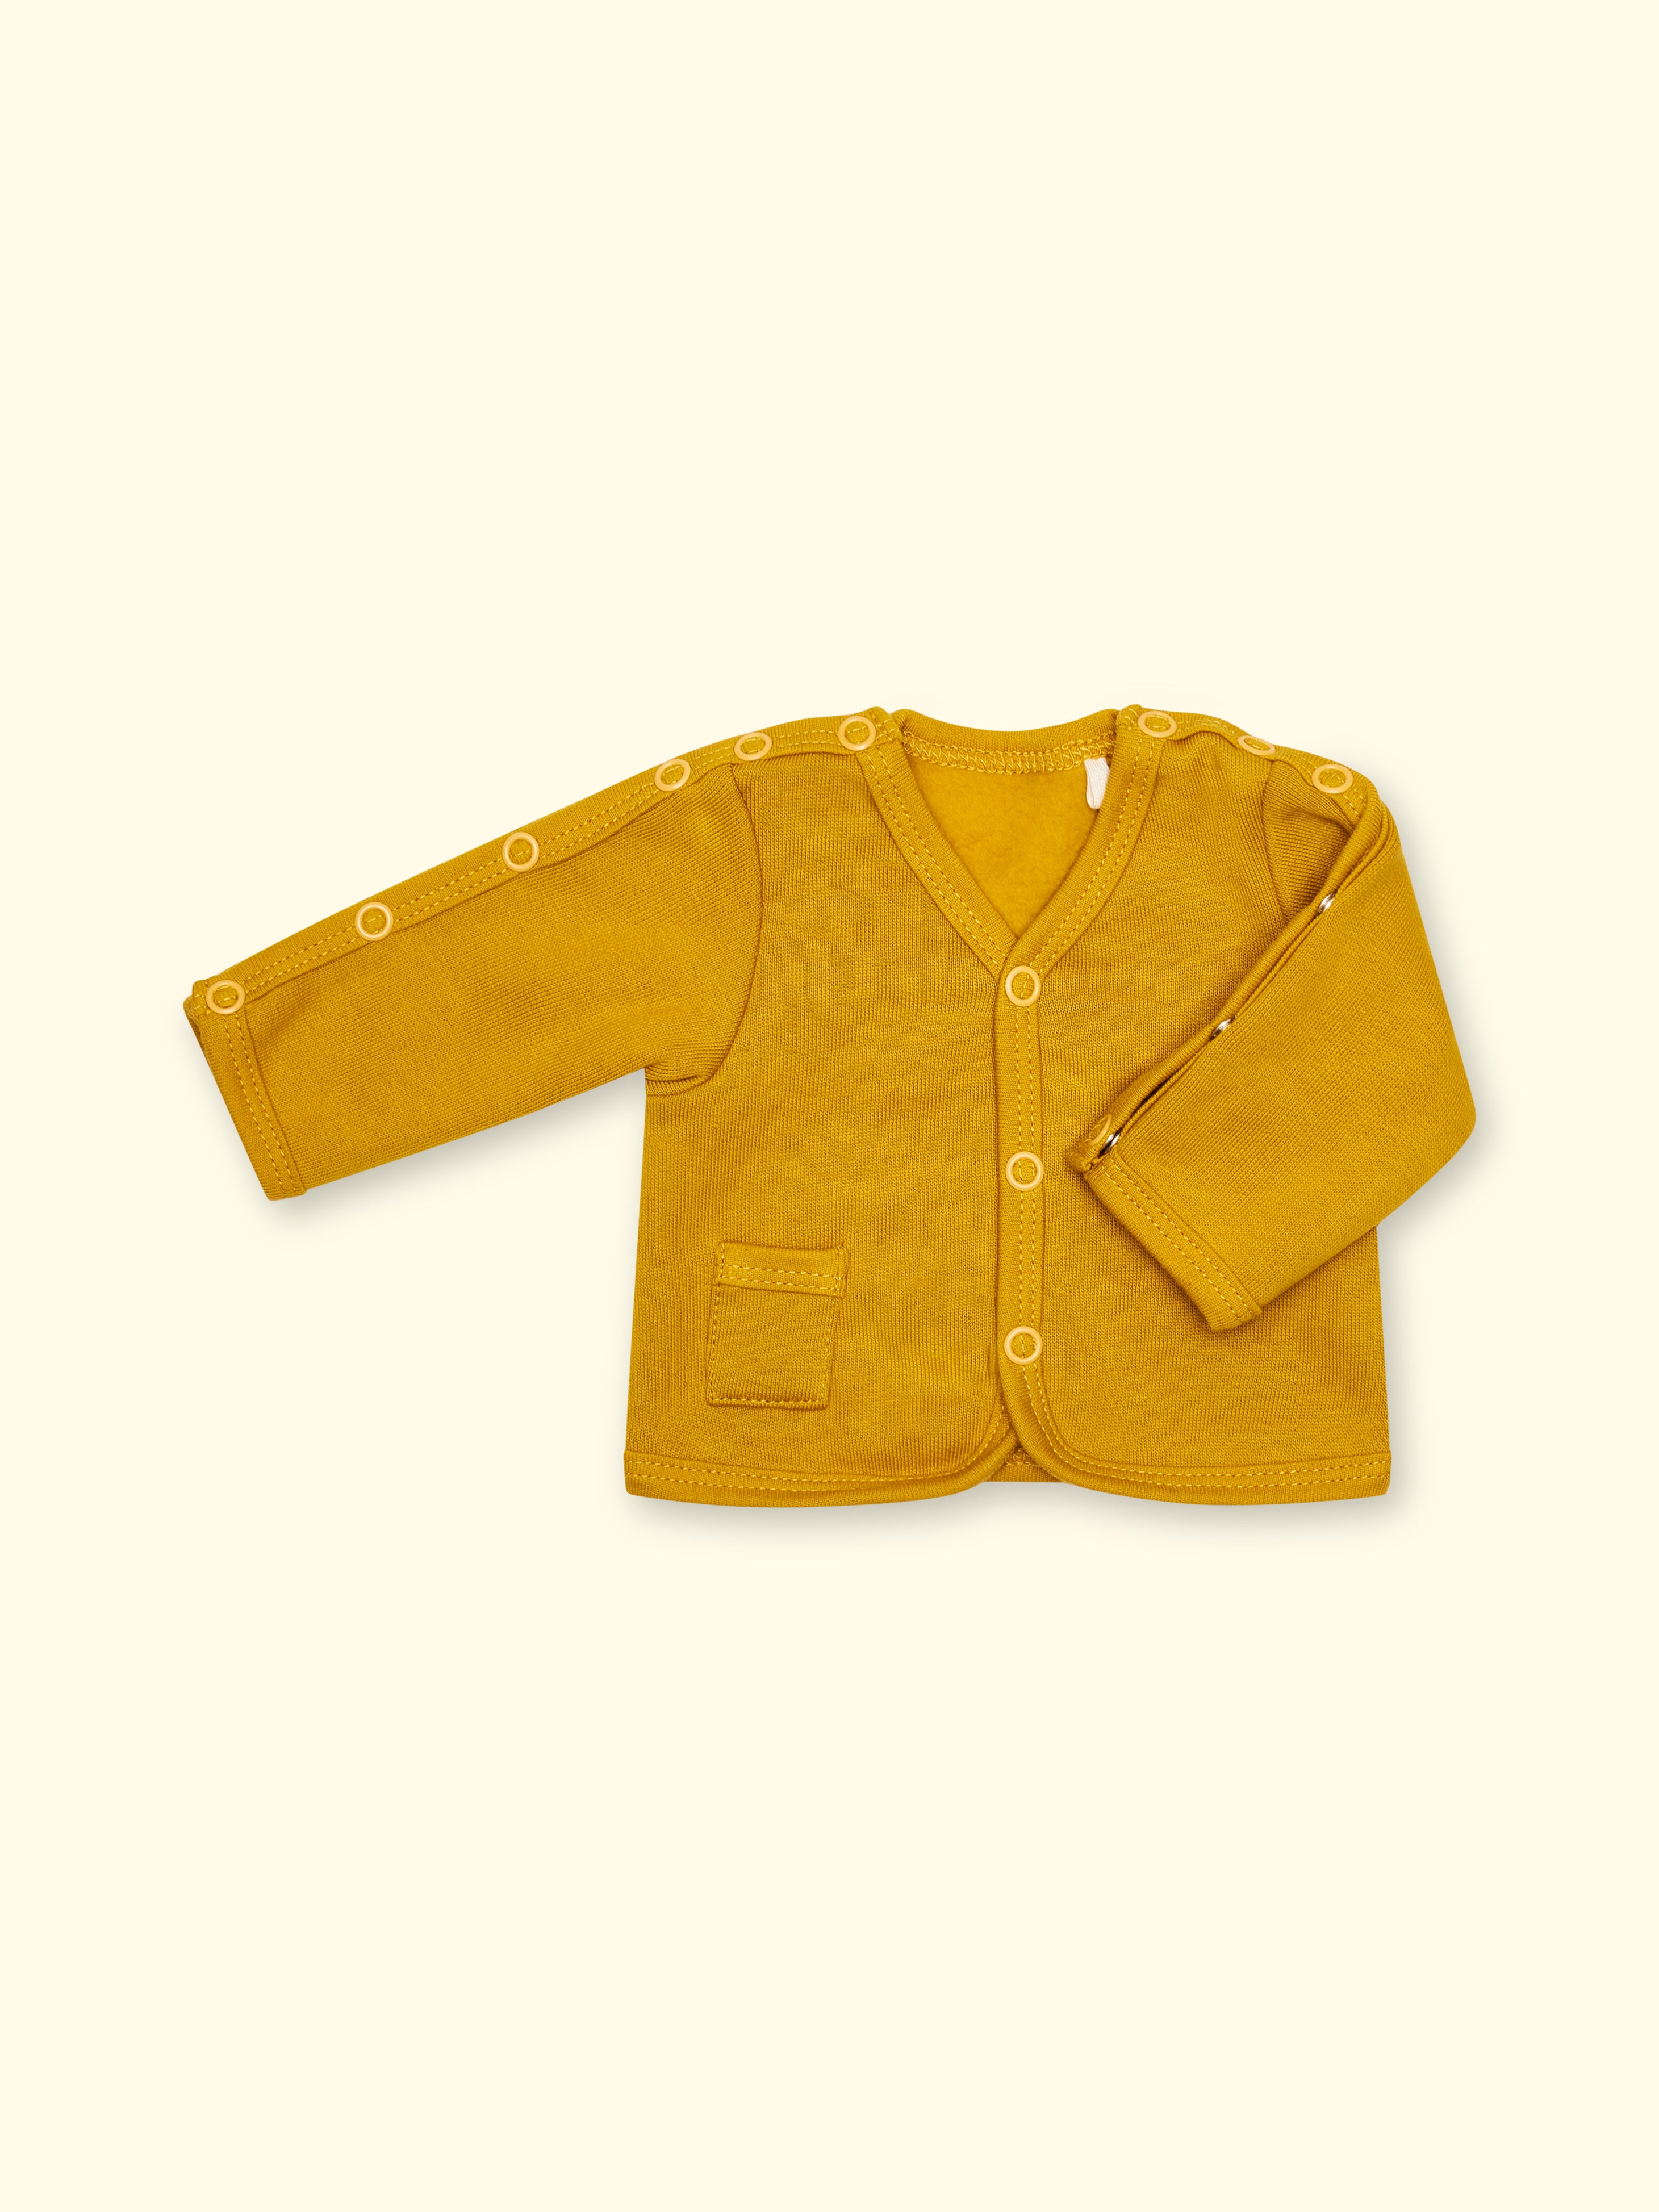 Adaptive jacket made of sweat fabric - mustard yellow